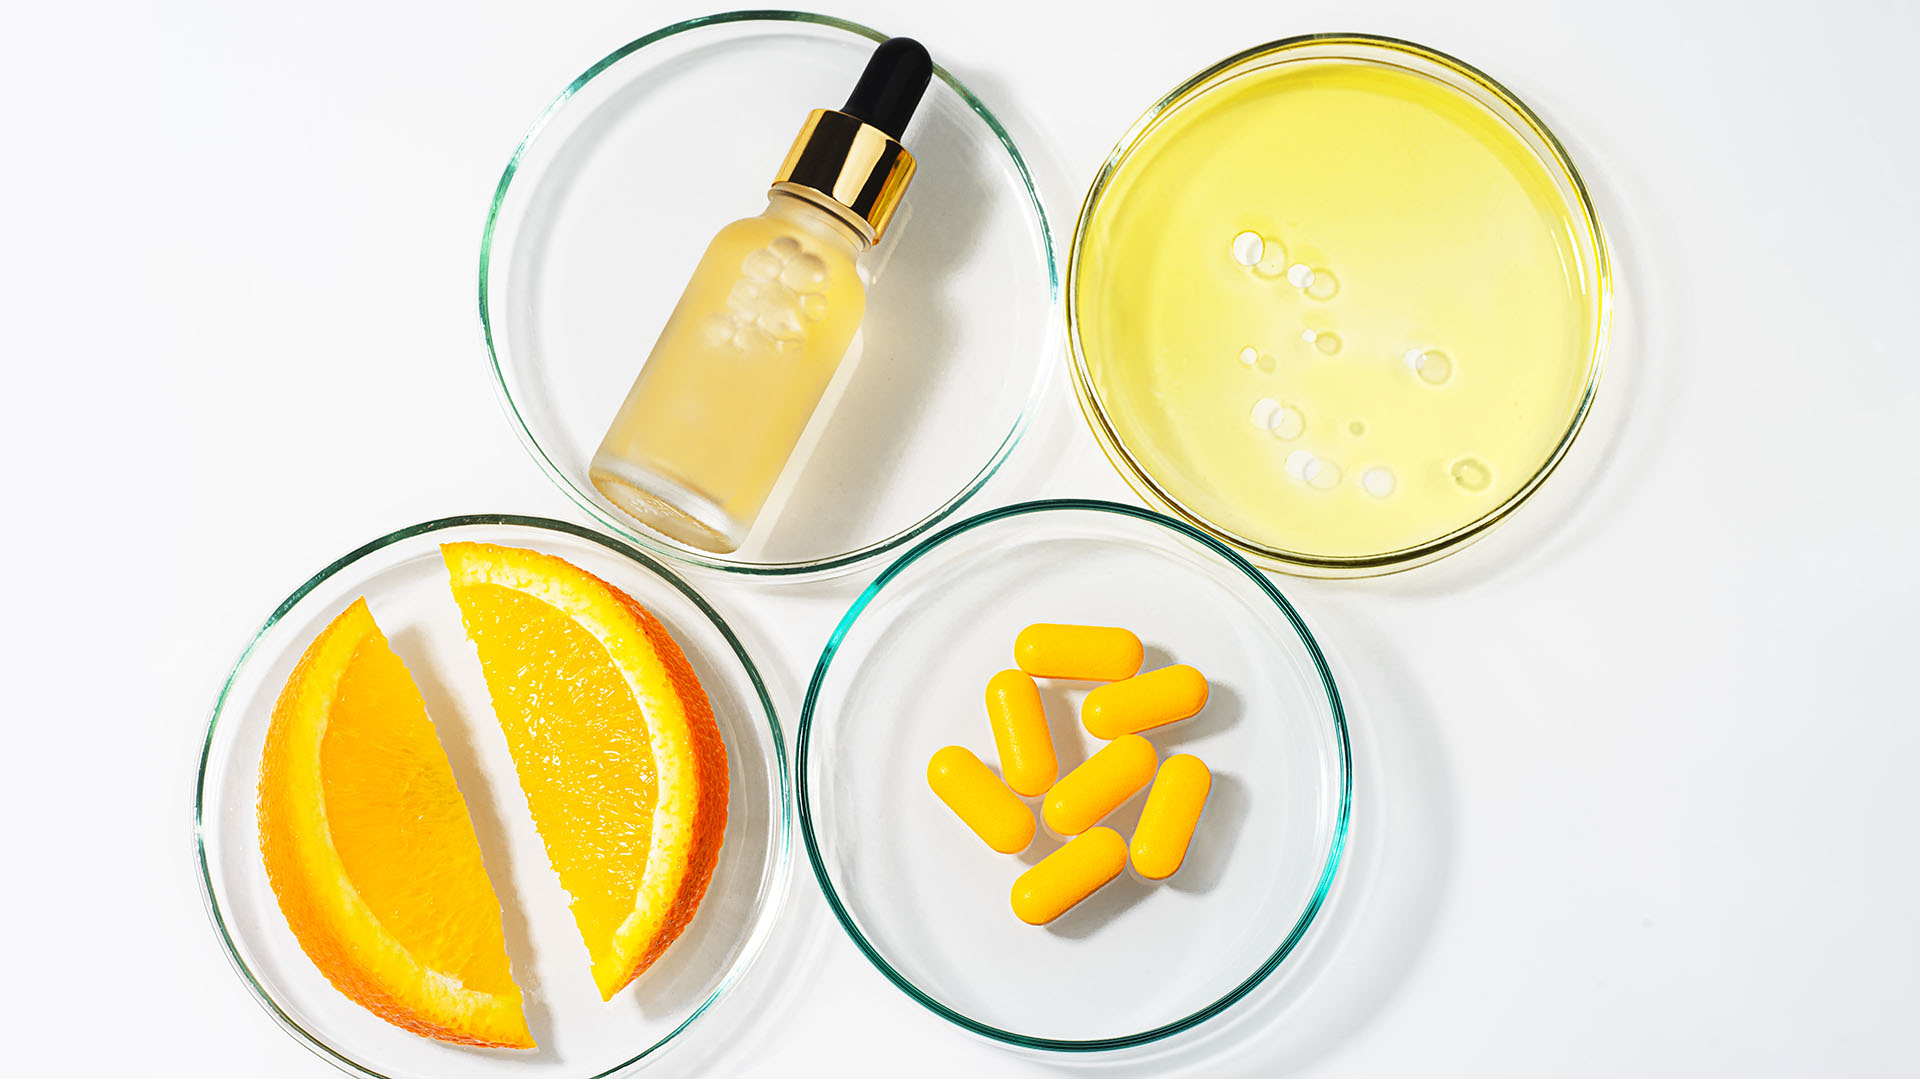 La vitamina C es un gran antioxidante y aliado de la piel, famoso por aportar “calma” al rostro con su uso. Foto: Getty.